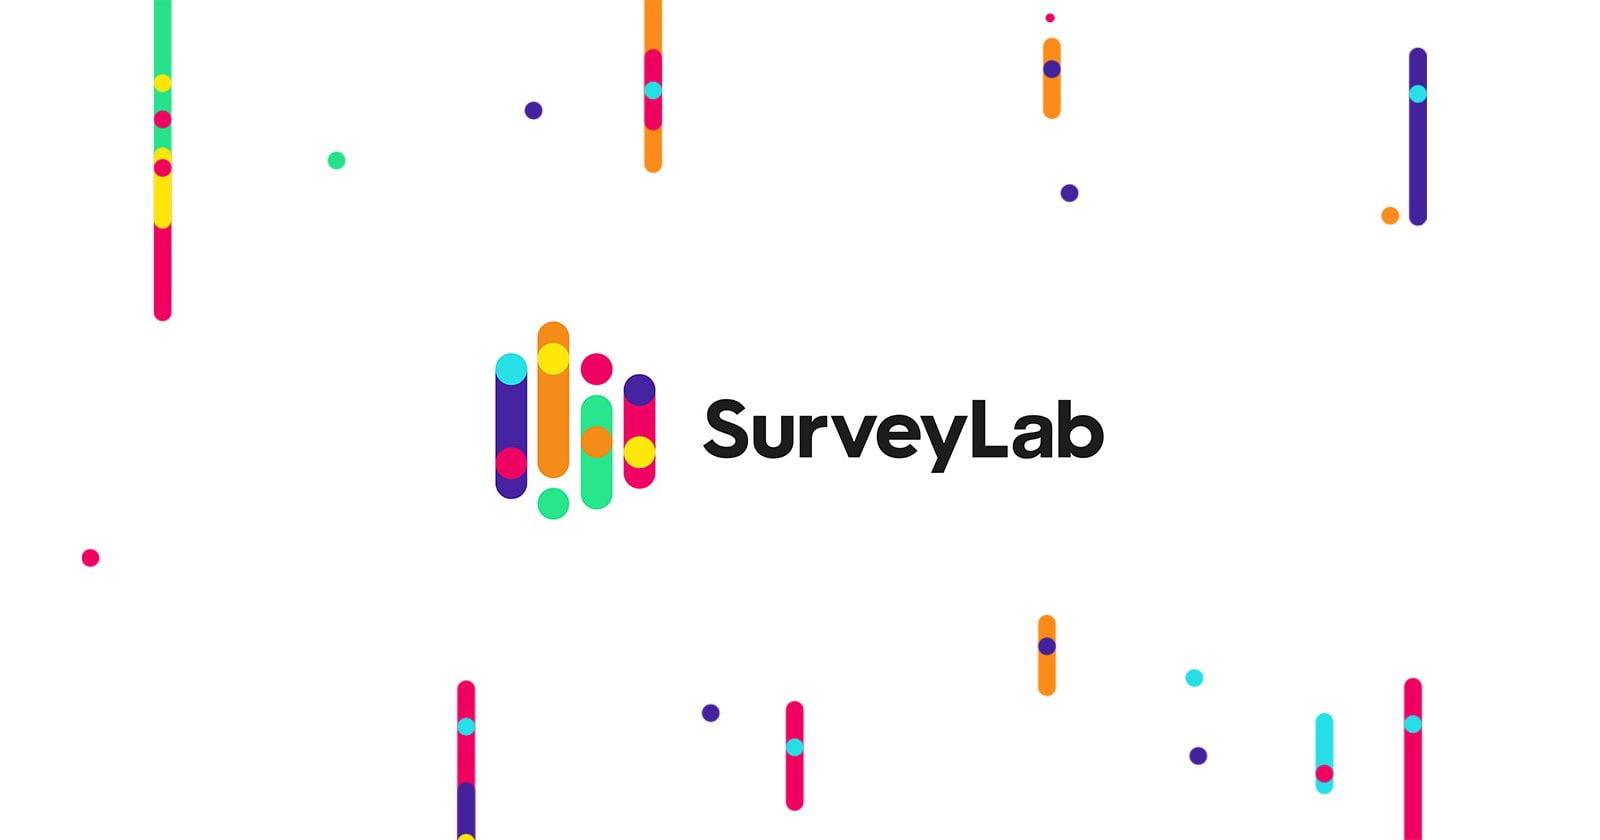 SurveyLab-WeblifyAi's All Useful Tools